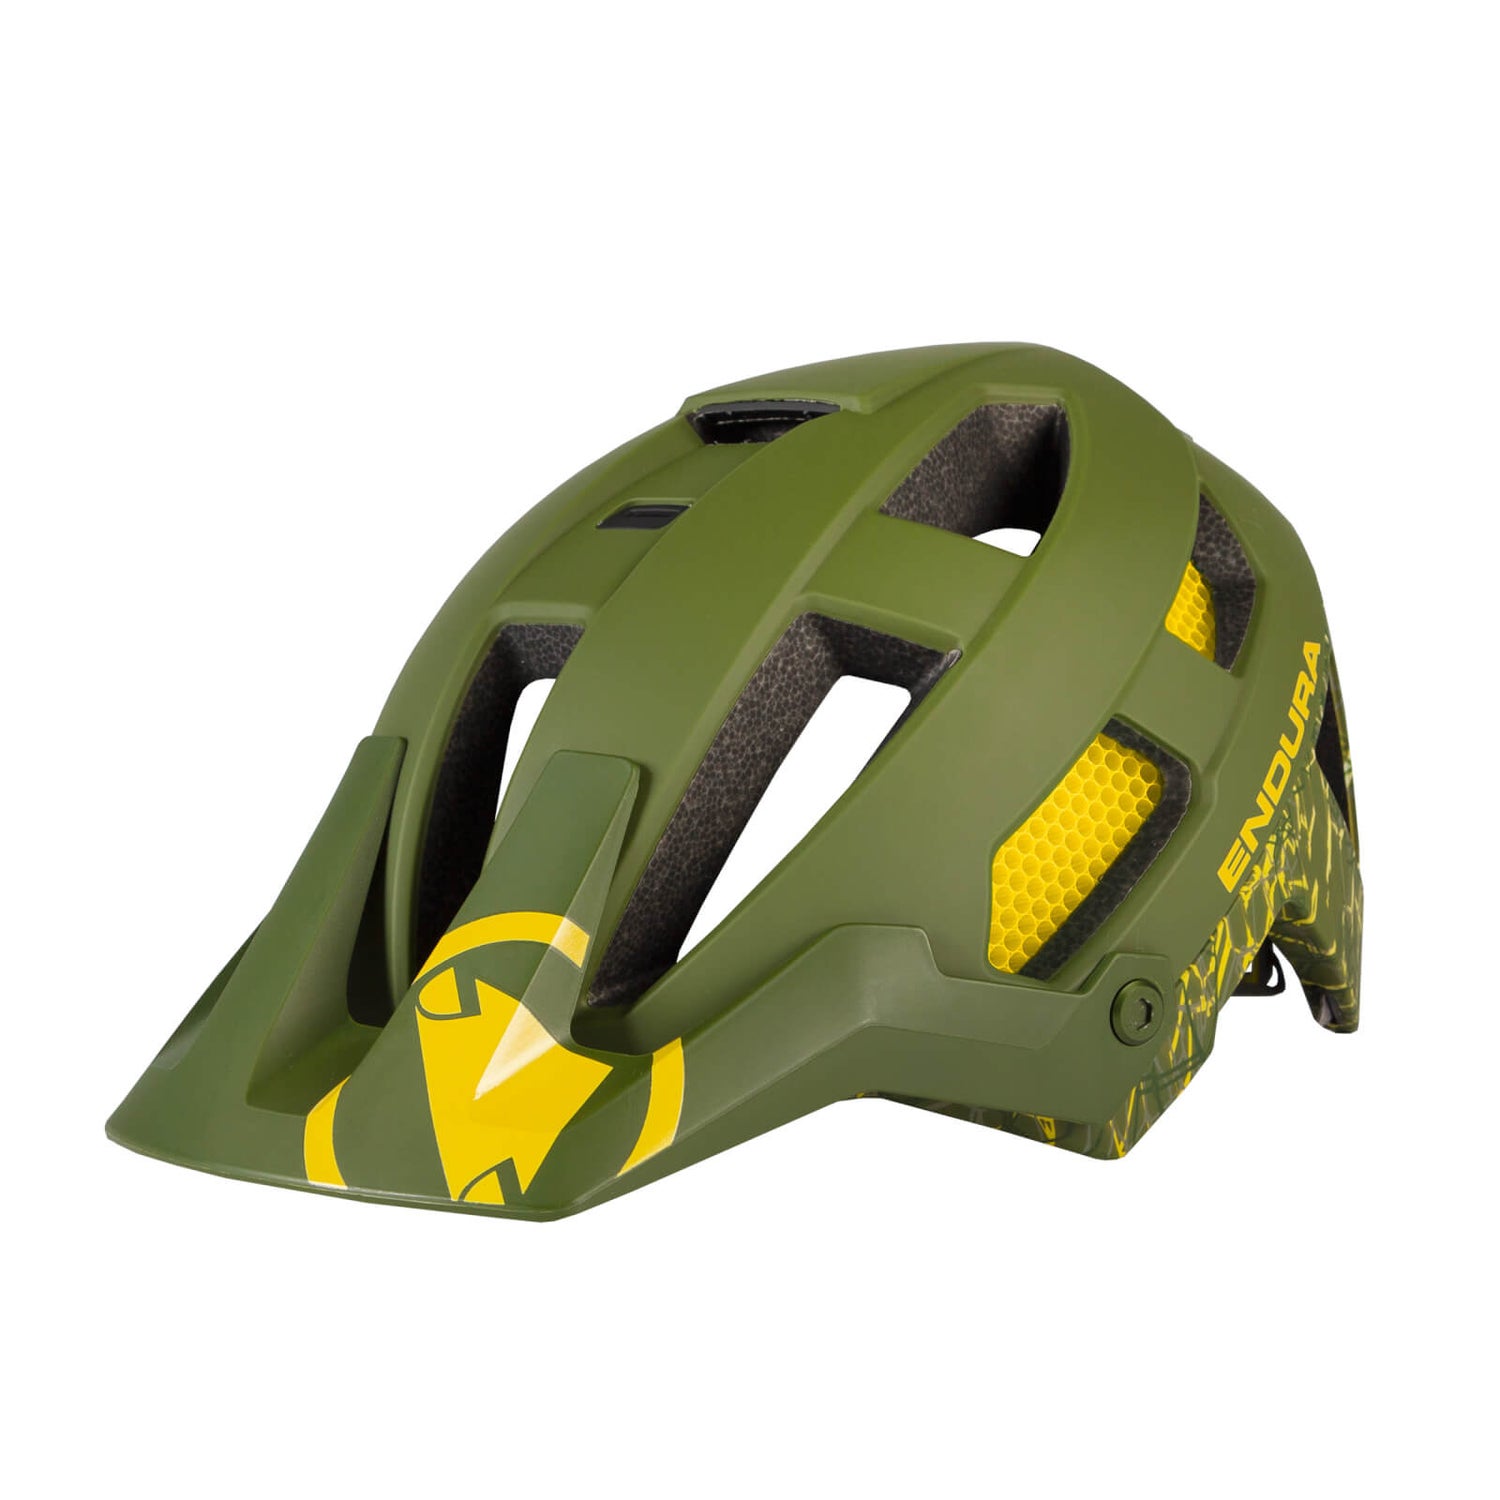 Men's SingleTrack Helmet - Olive Green - S-M